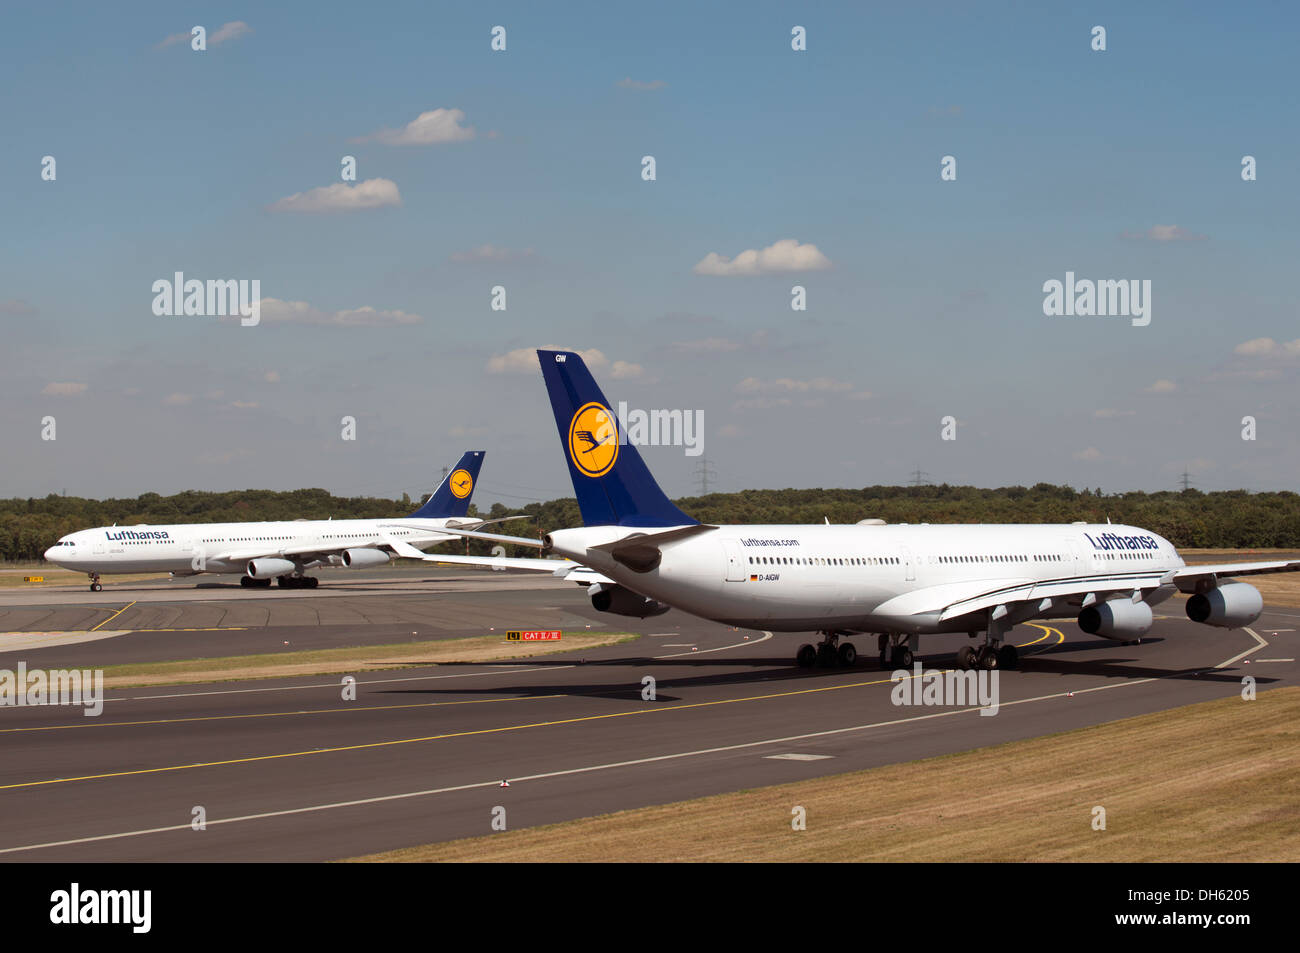 Lufthansa Airbus A340-300, avions de l'aéroport international de Düsseldorf, Allemagne. Banque D'Images